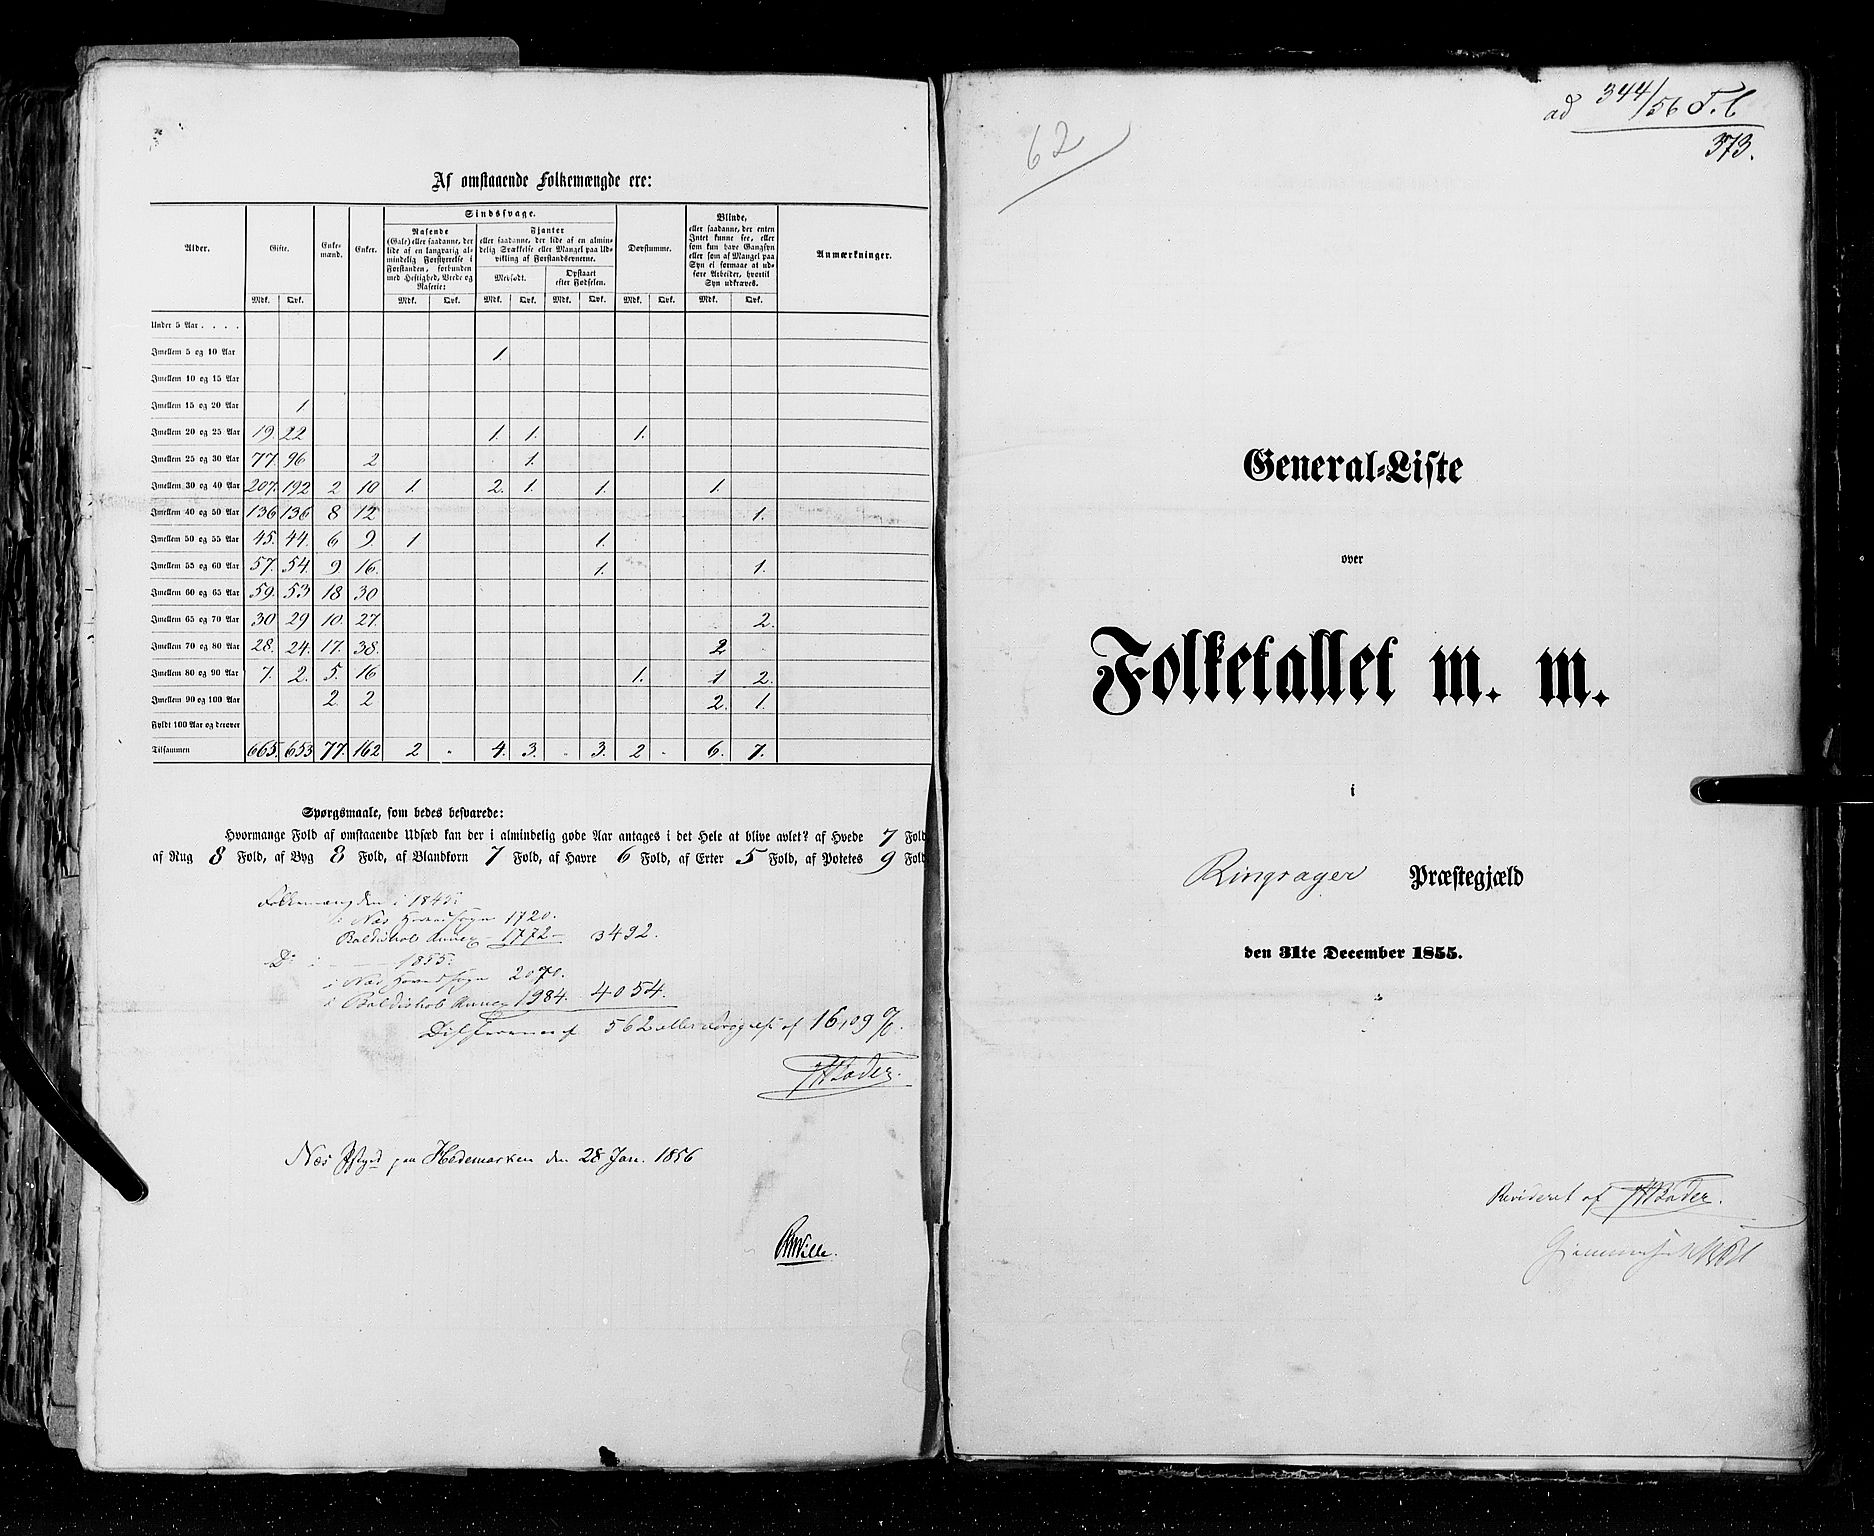 RA, Folketellingen 1855, bind 1: Akershus amt, Smålenenes amt og Hedemarken amt, 1855, s. 373